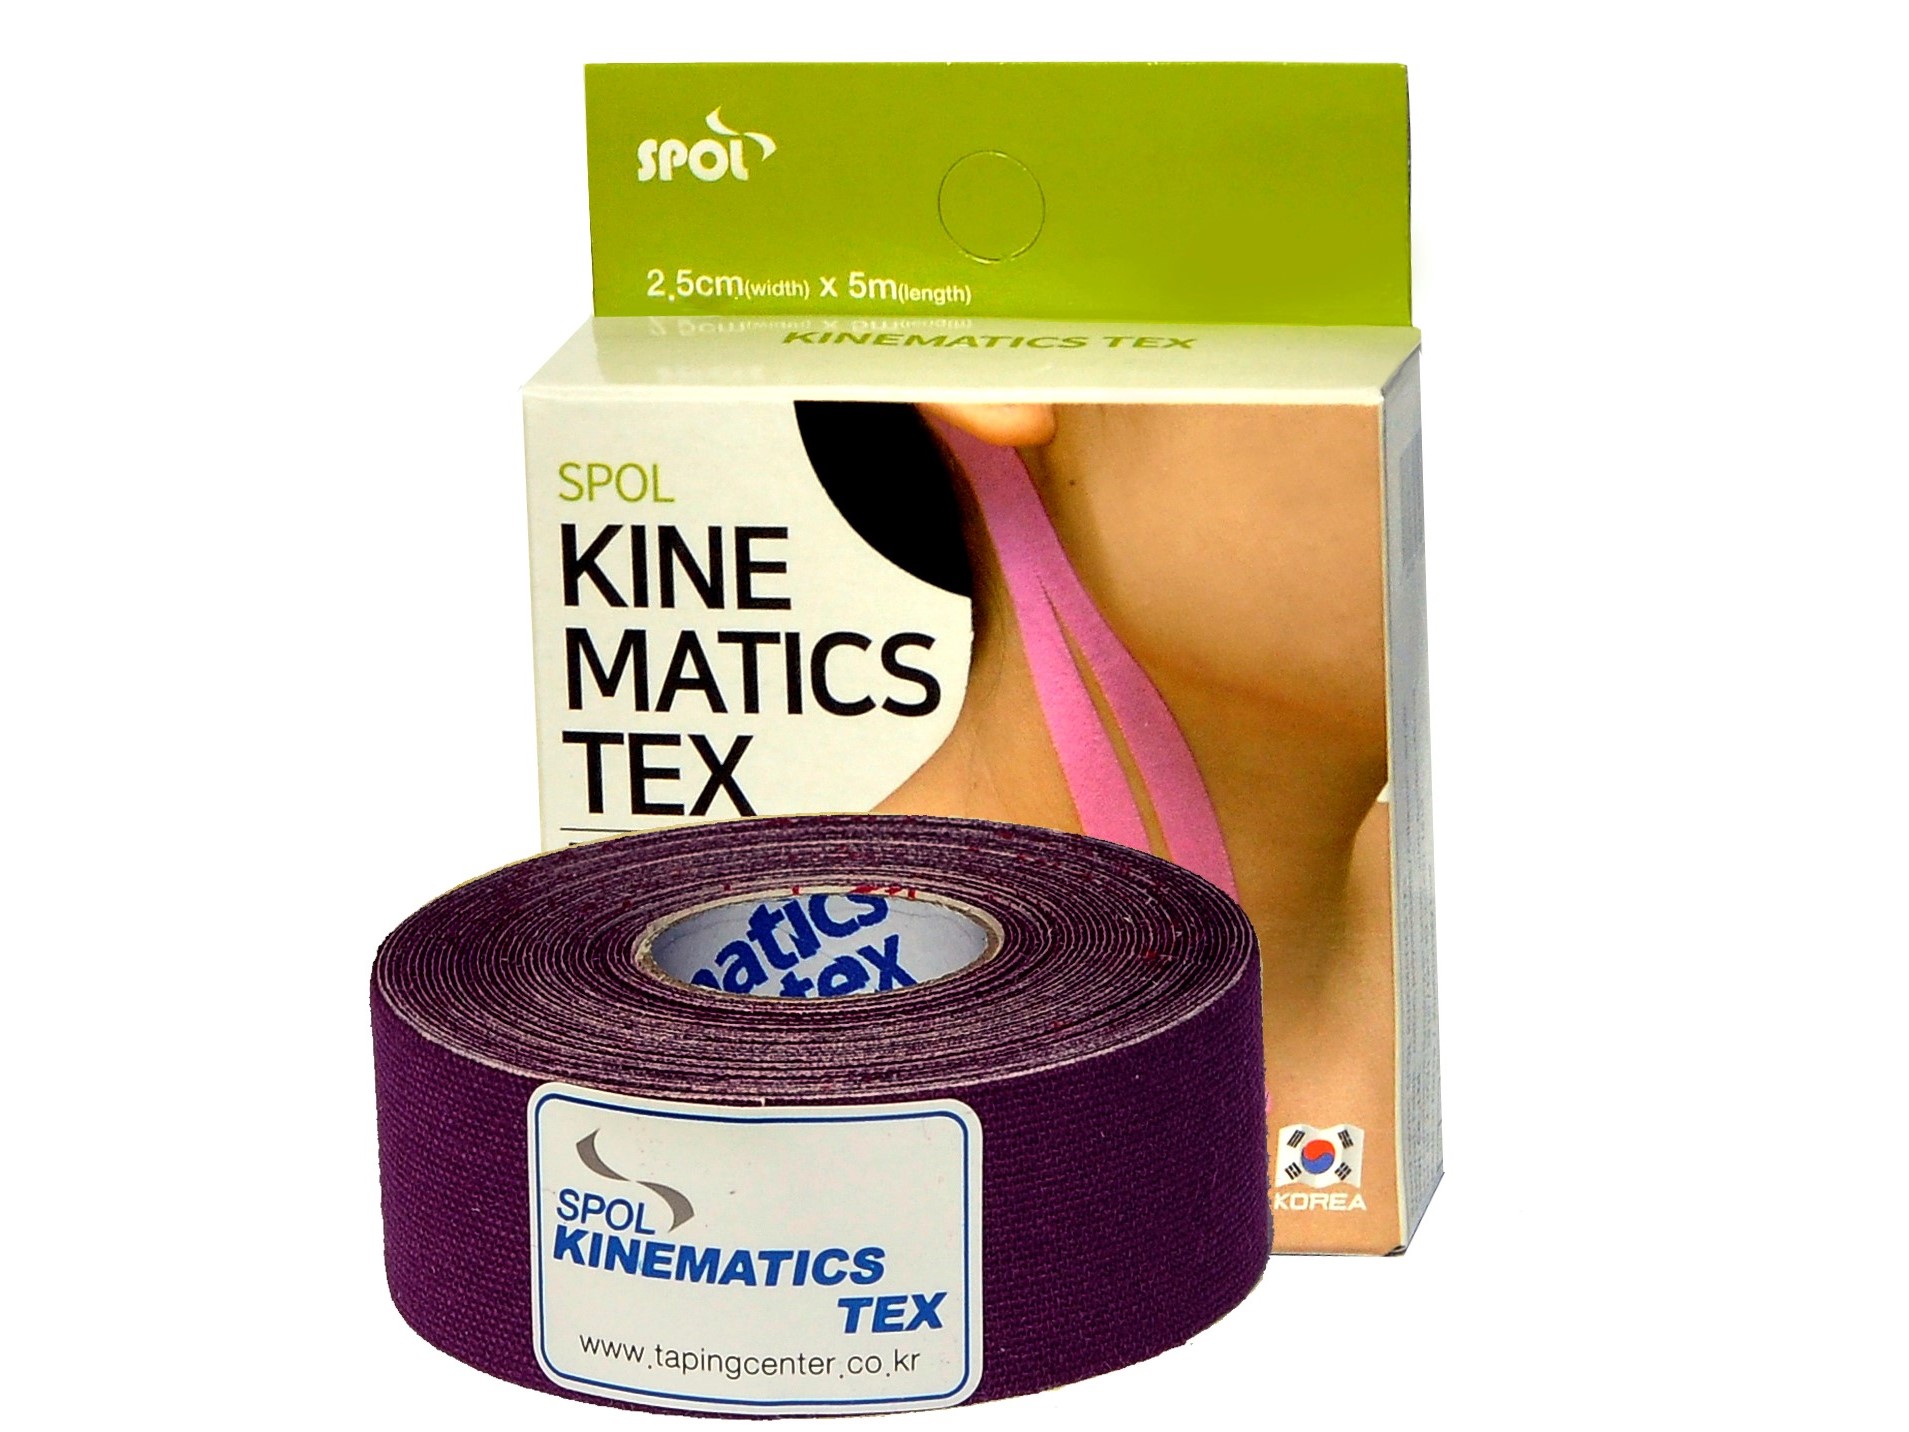 фото Оригинальные кинезио тейпы spol tape 2,5см x 5м фиолетовый для лица, гипоаллергенный slim